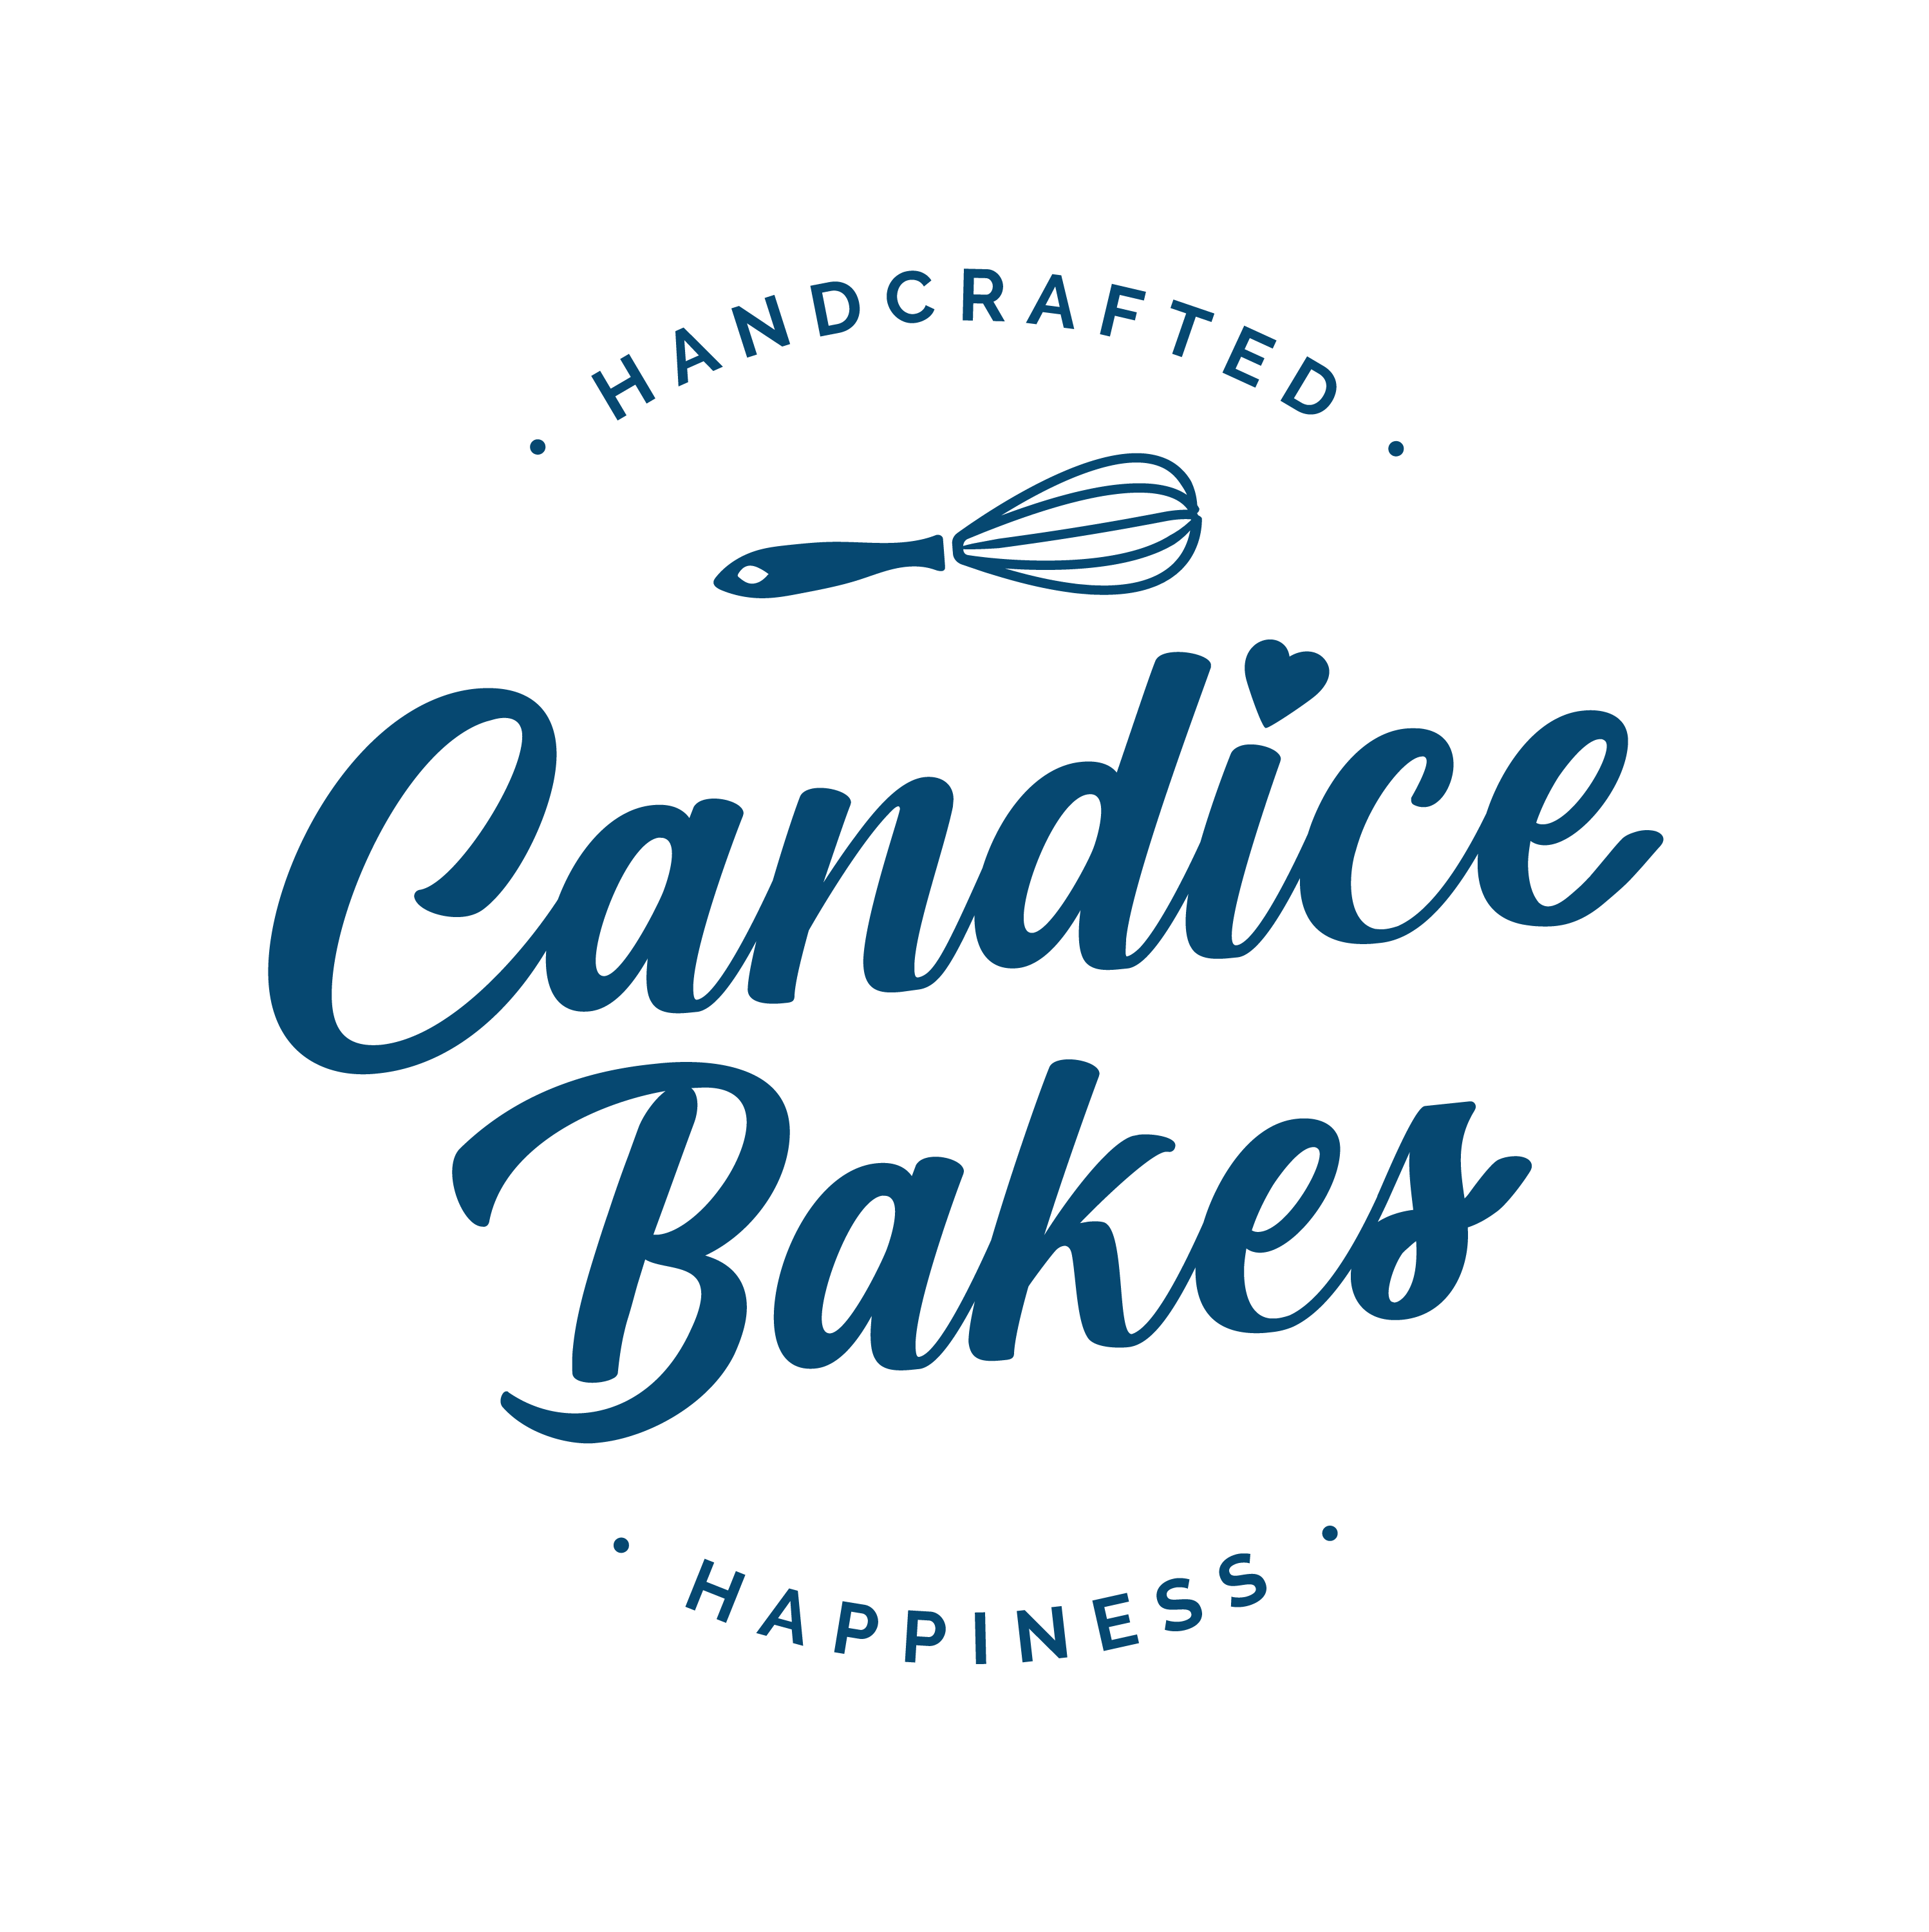 Candice Bakes, "handcrafted happiness", Ateliers de pâtisserie et gâteaux évènementiels. Pastry Workshops and Event Cakes